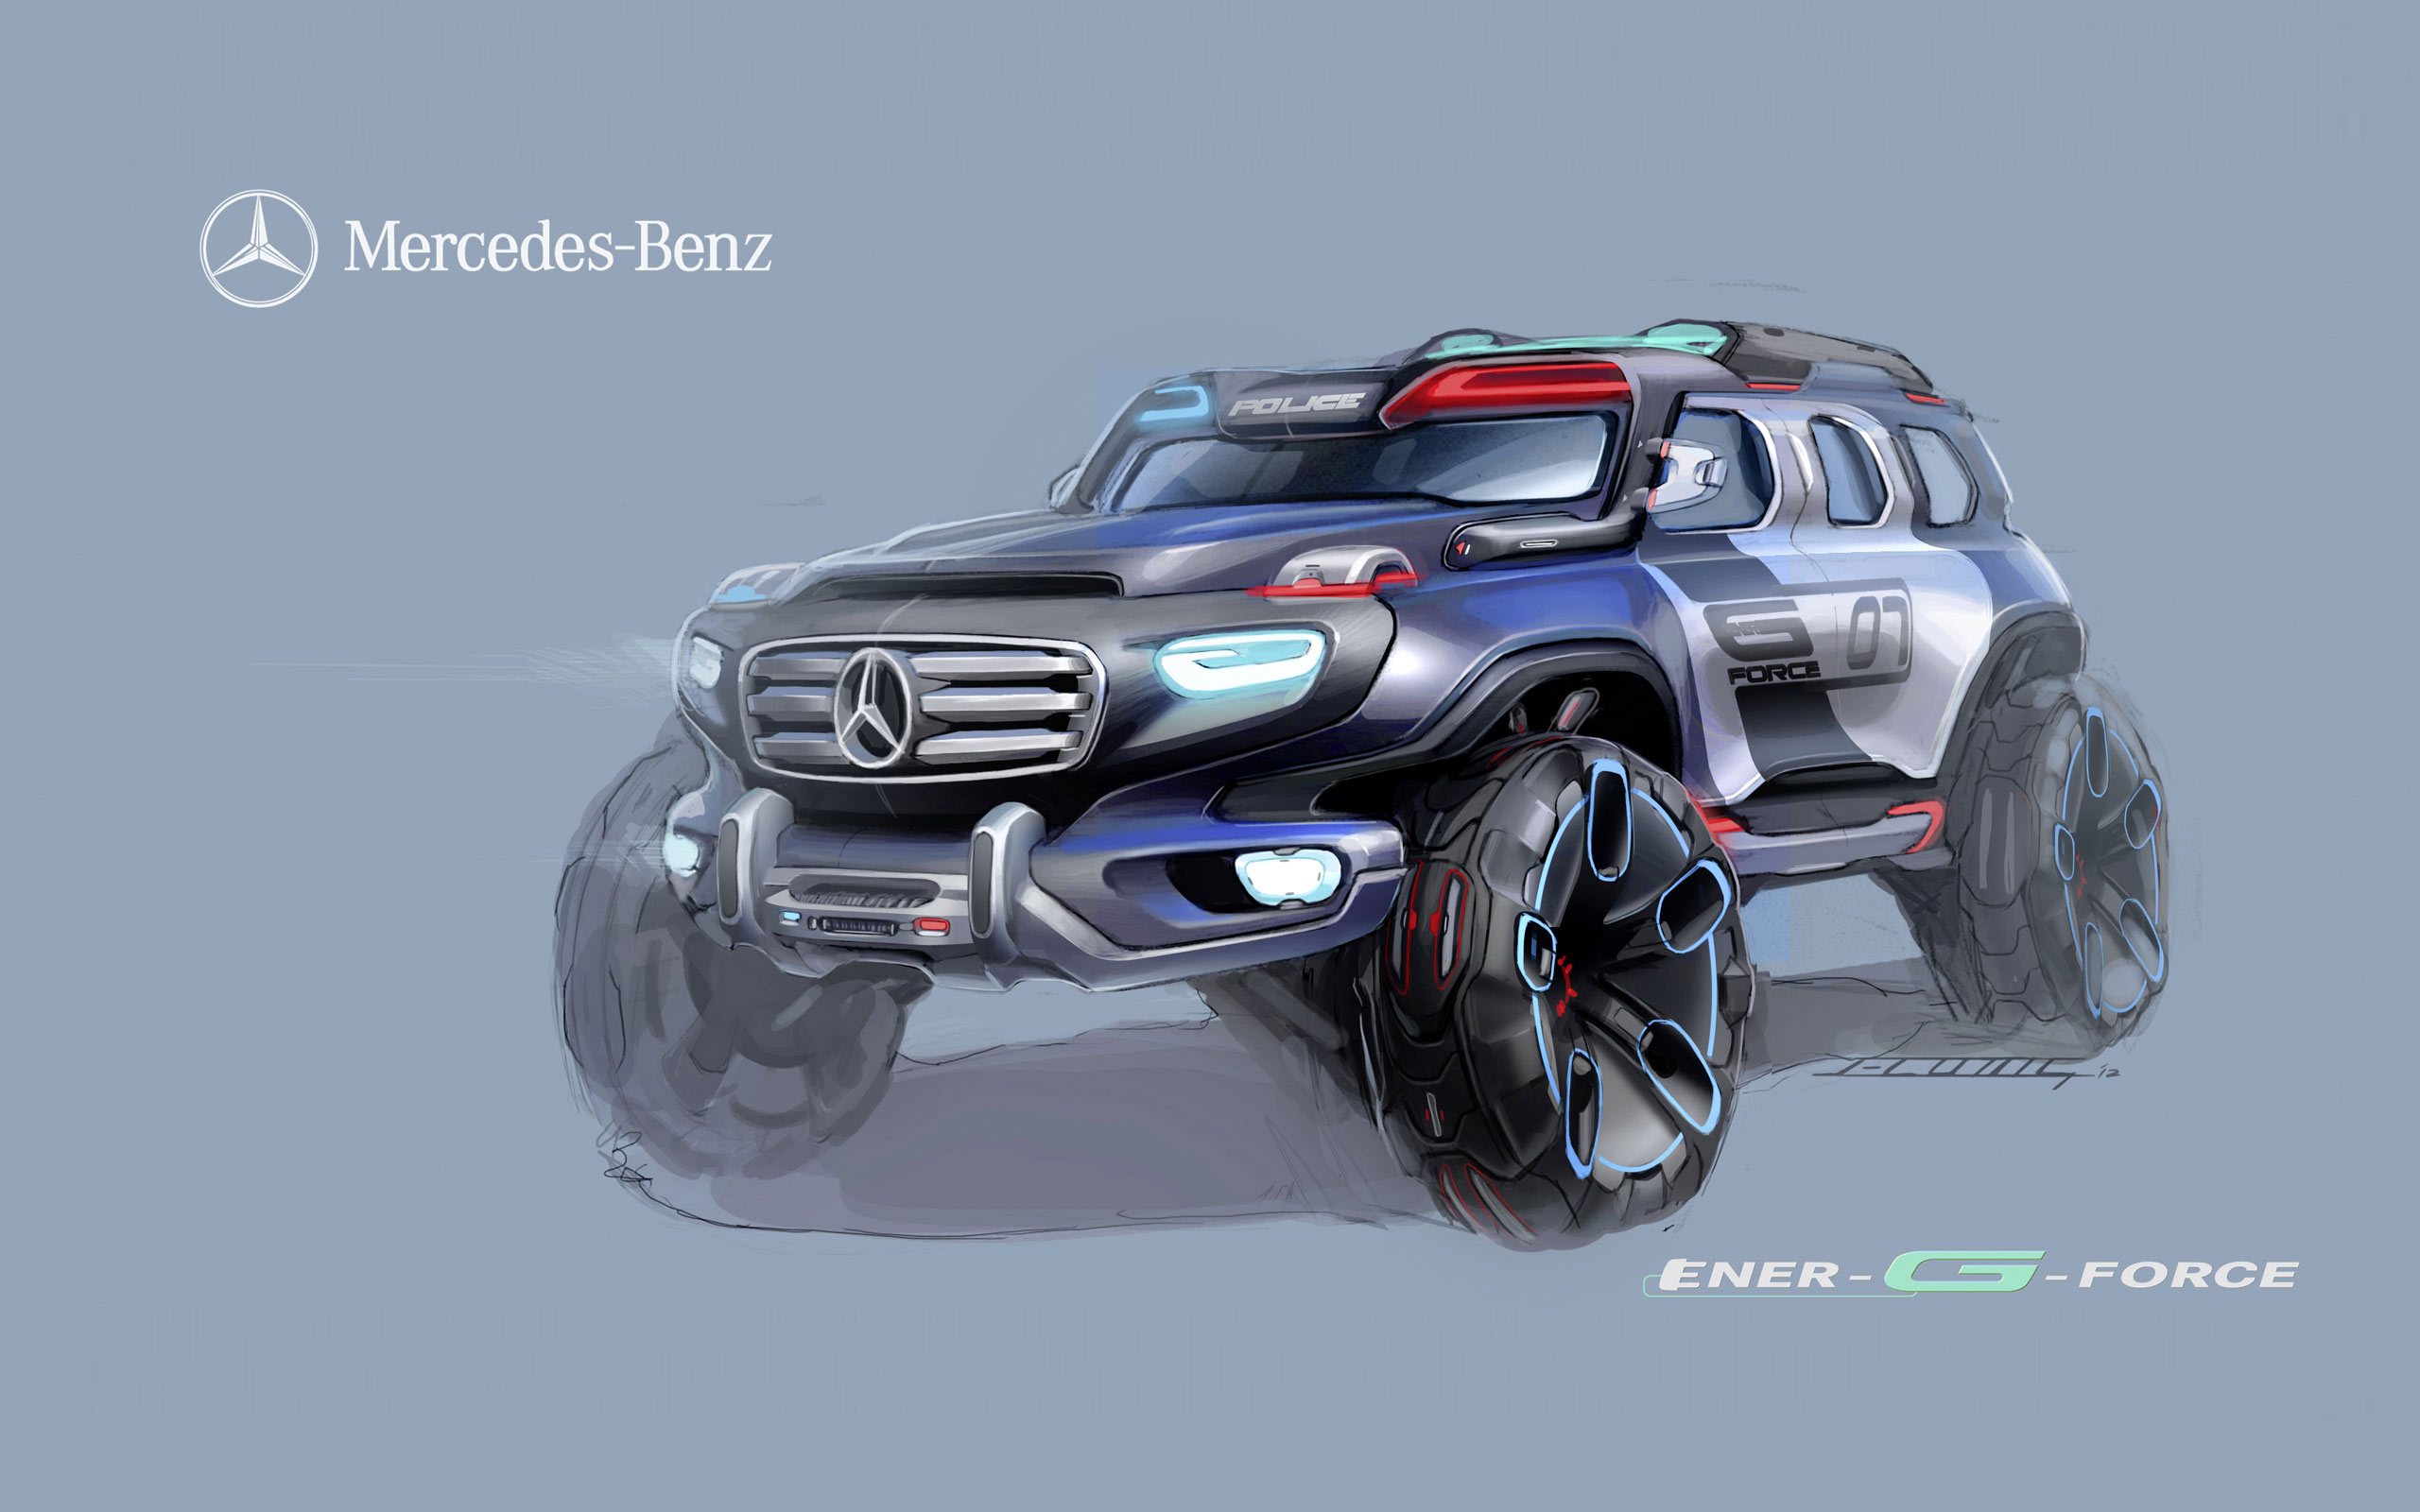 Нарисованный Mercedes-Benz Ener-G-Force Concept на синем фоне